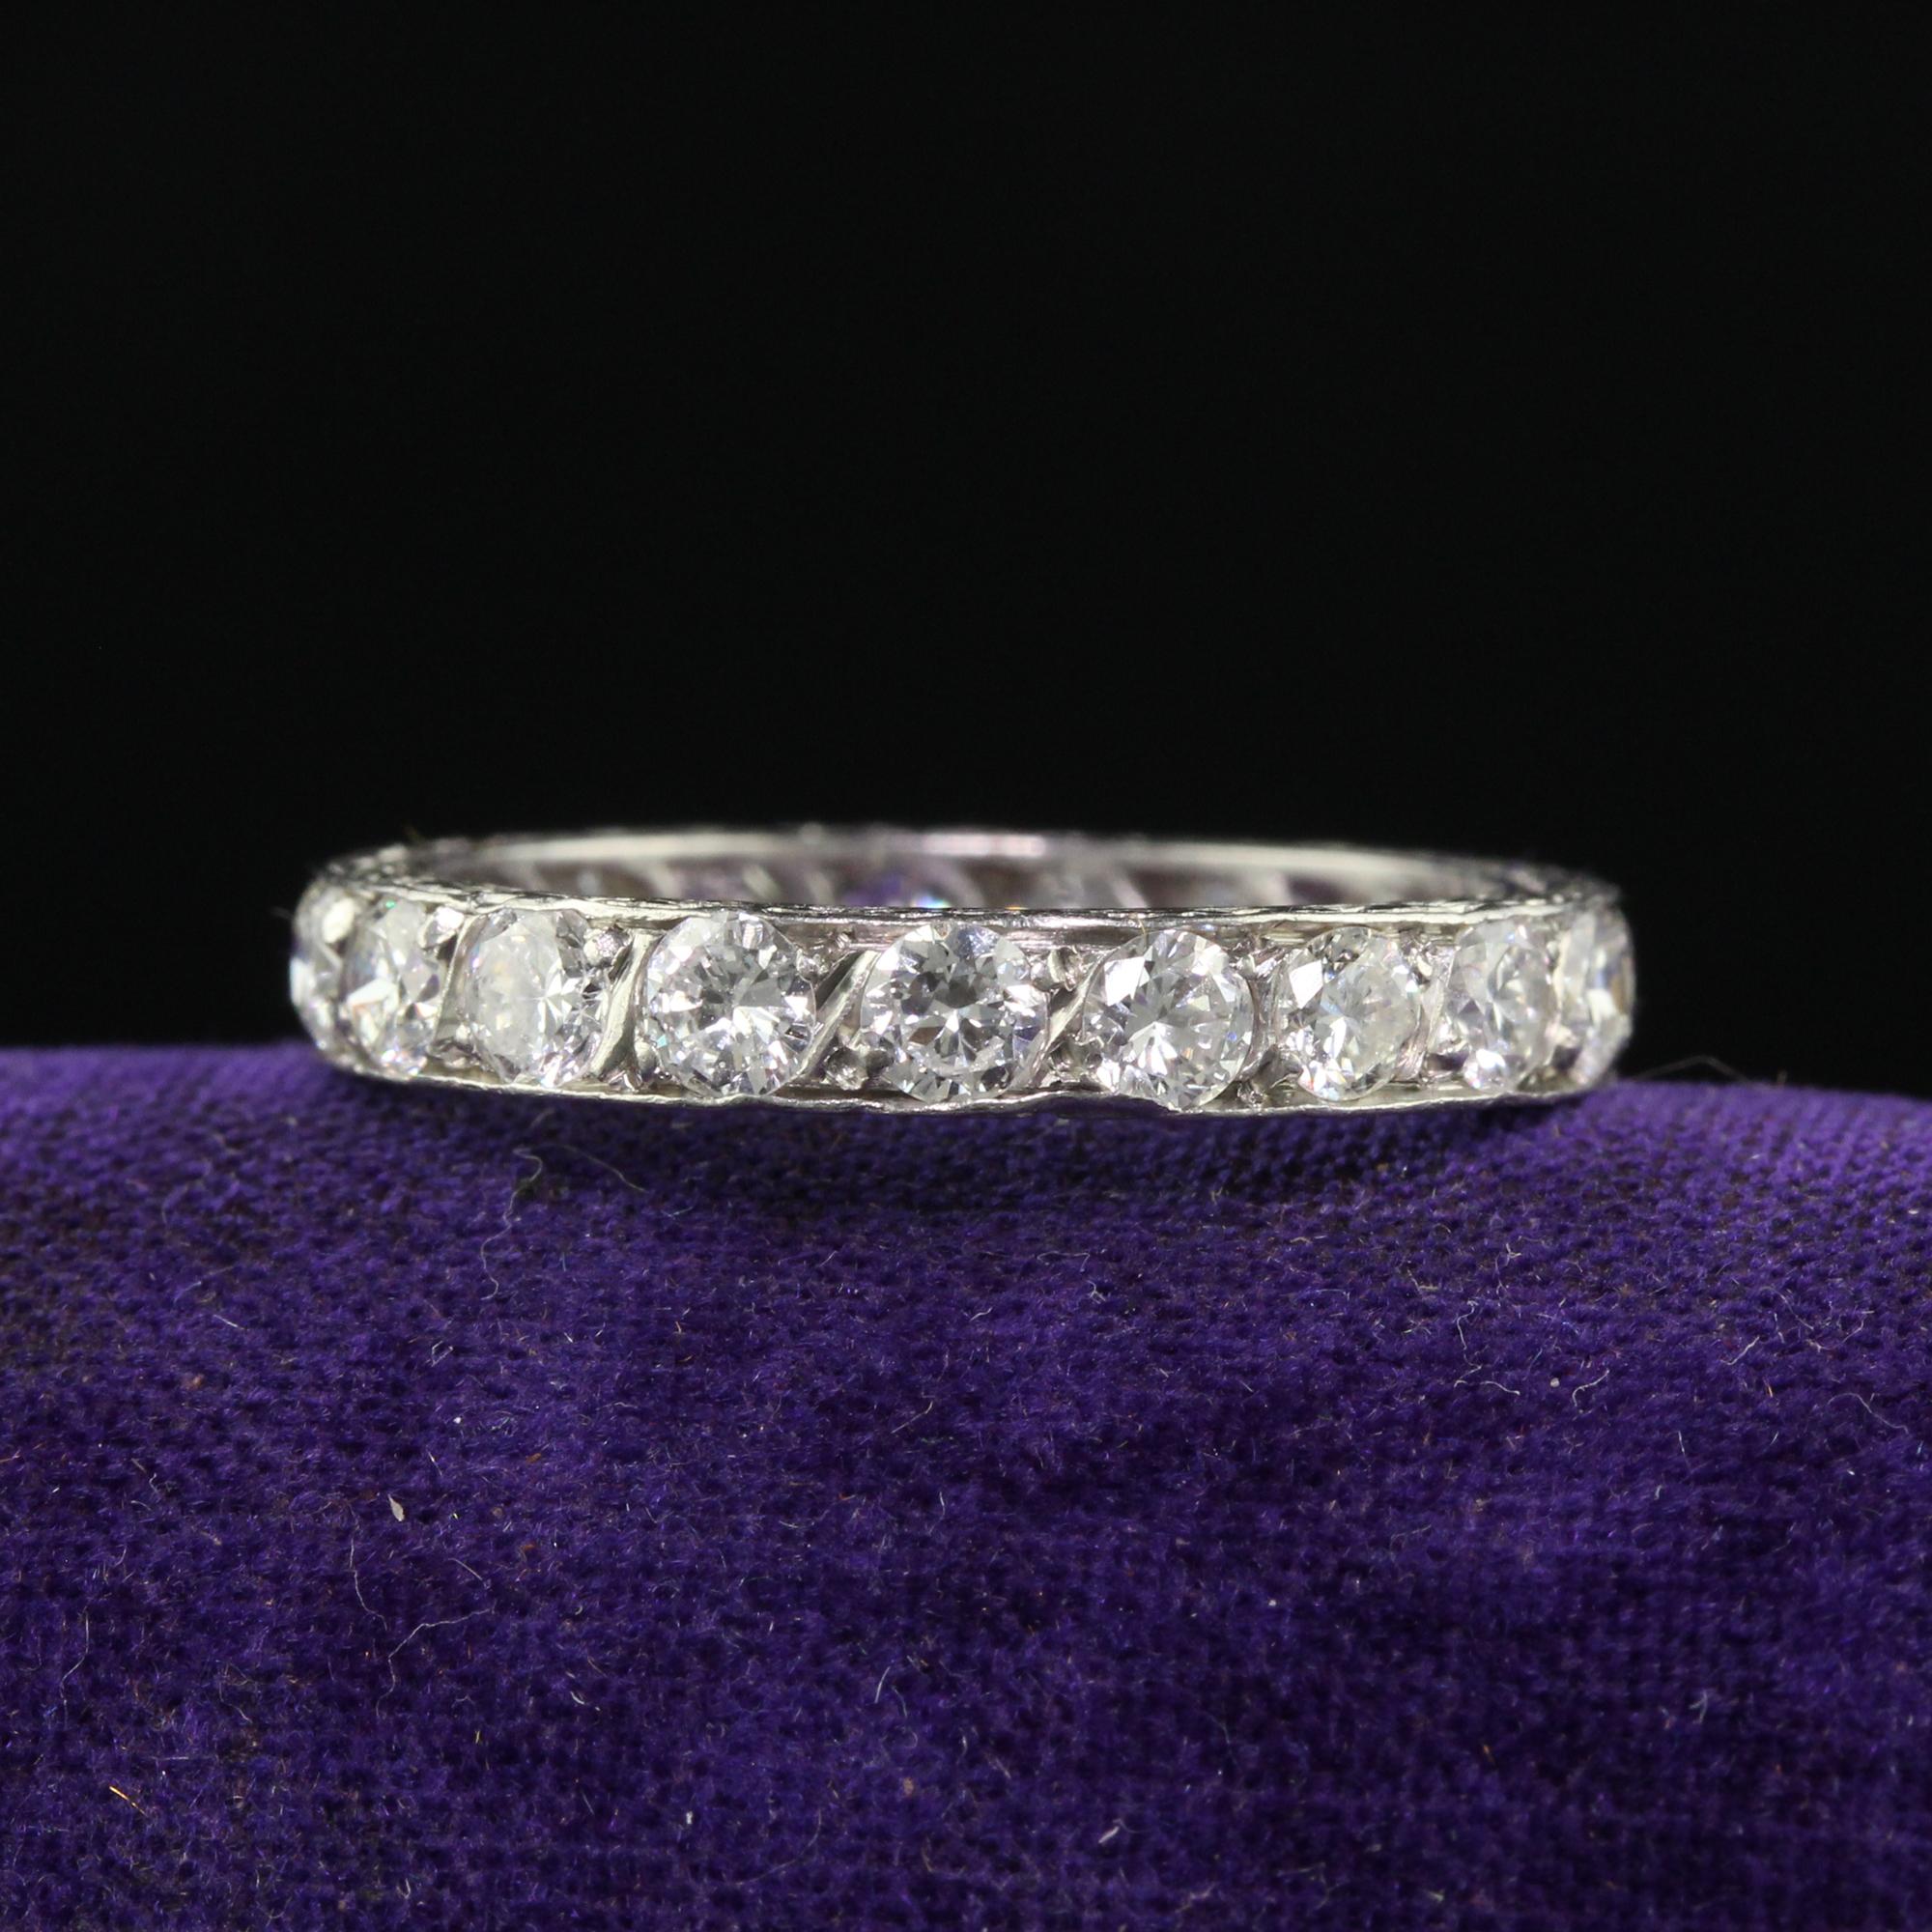 Schöne antike Art Deco Platin Old European Cut Diamant graviert Eternity Band. Dieses wunderschöne Art-Deco-Ewigkeitsarmband ist aus Platin gefertigt. Der Ring hat schöne weiße Diamanten im Altschliff, die den gesamten Ring umgeben. Die Seiten des